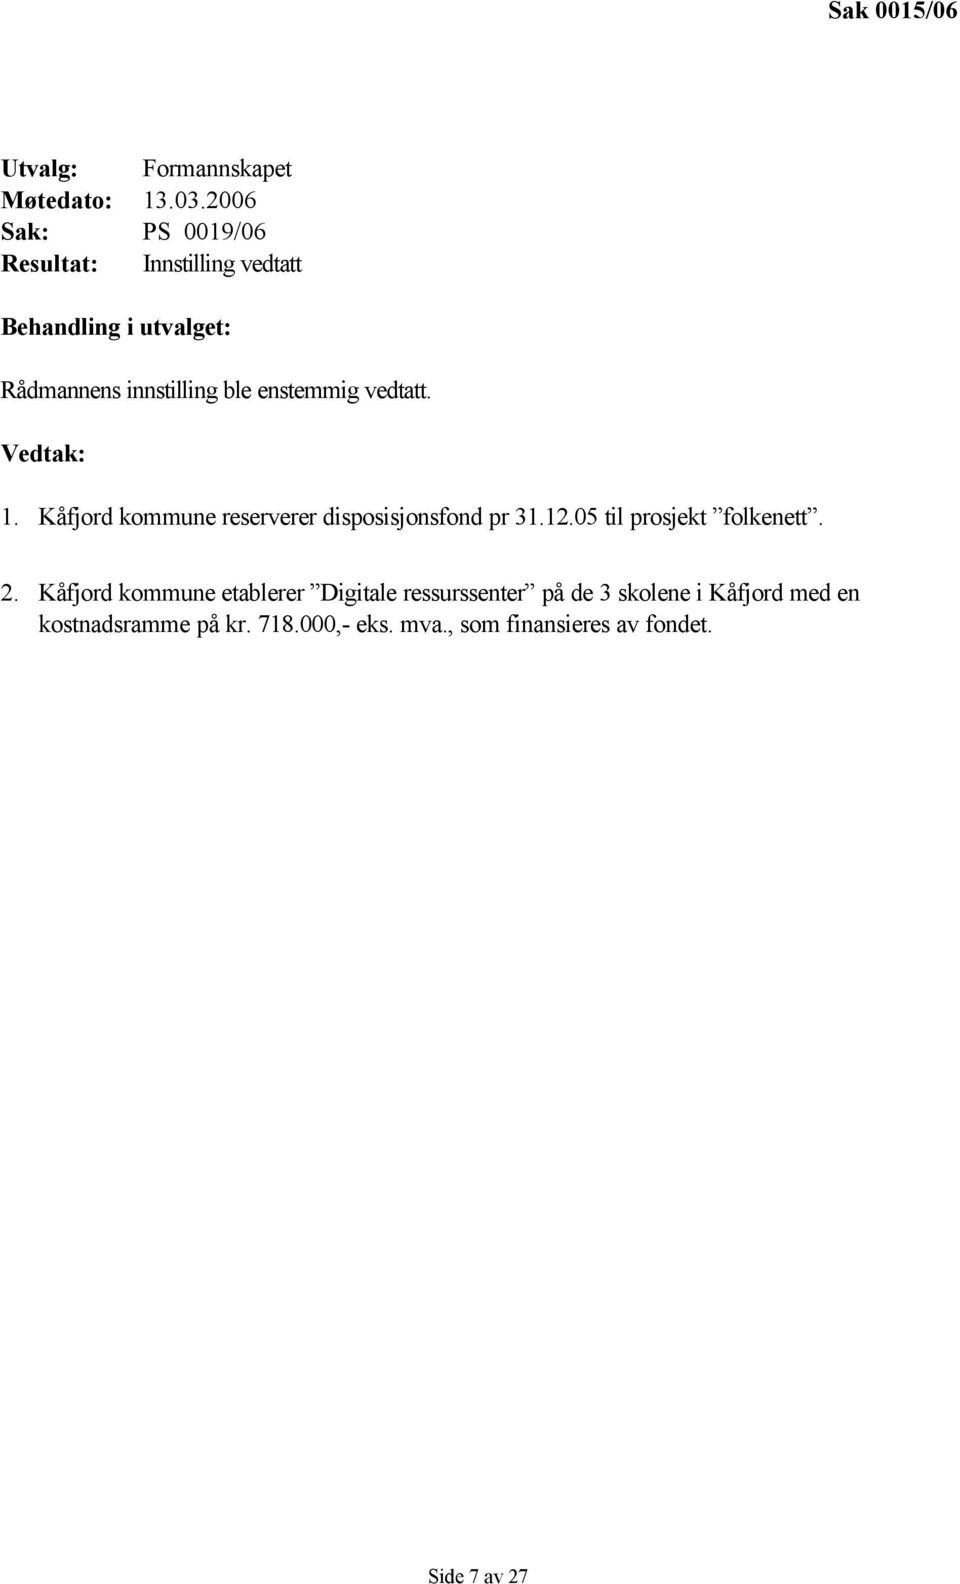 enstemmig vedtatt. Vedtak: 1. Kåfjord kommune reserverer disposisjonsfond pr 31.12.